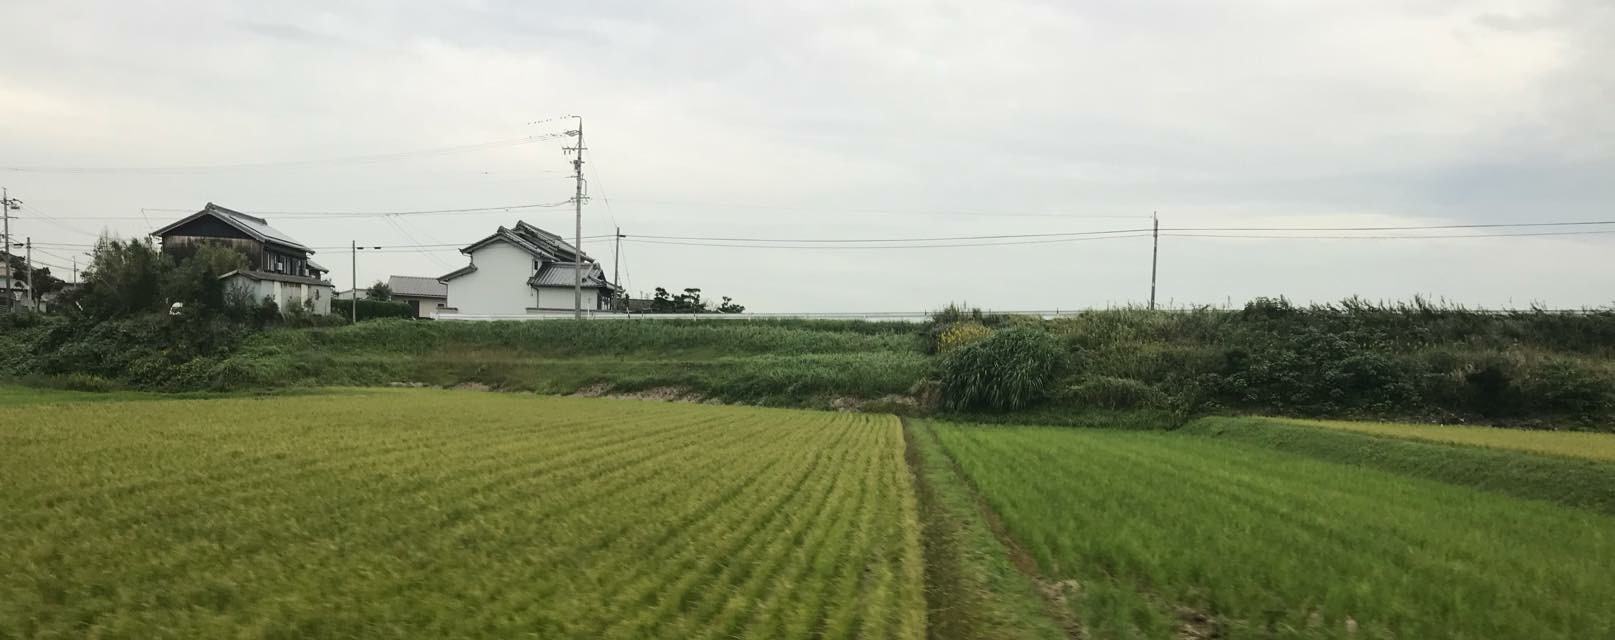 愛知県知多郡武豊町の「わっぱ知多共同事業所」の「わっぱ知多農場」の農場と製粉場に